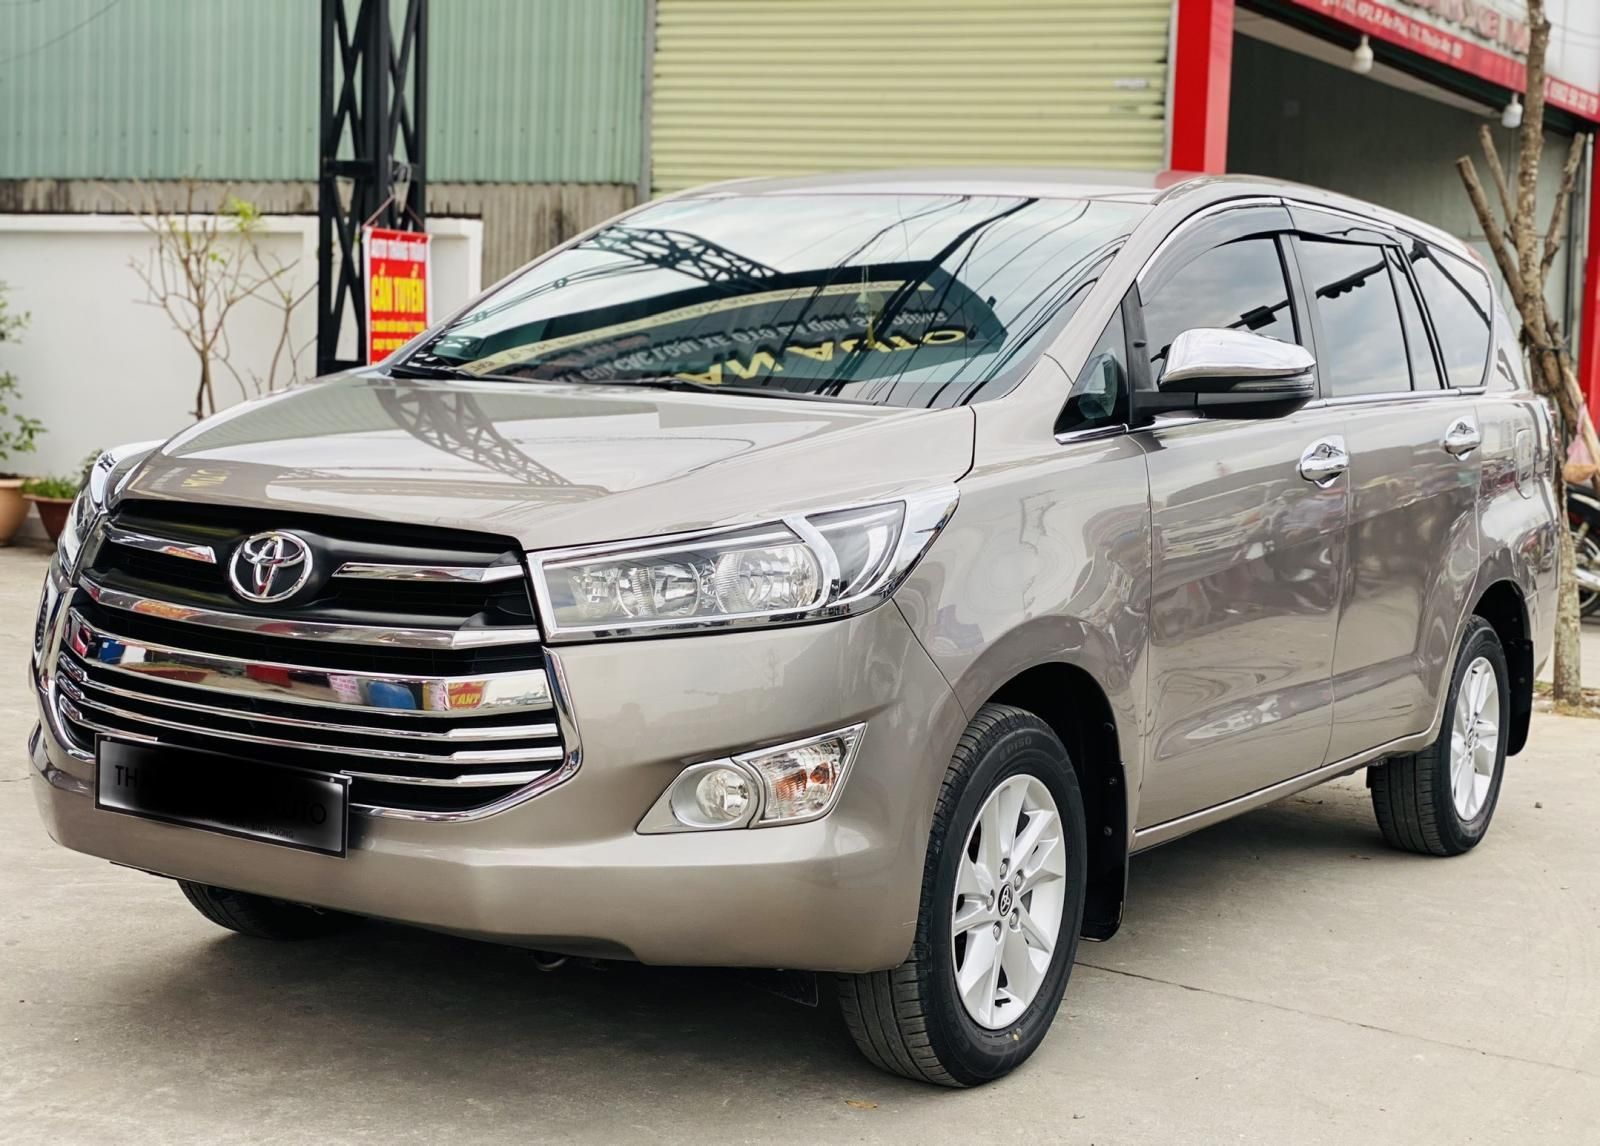 Bán xe ô tô Toyota Innova đời 2019 giá rẻ chính hãng